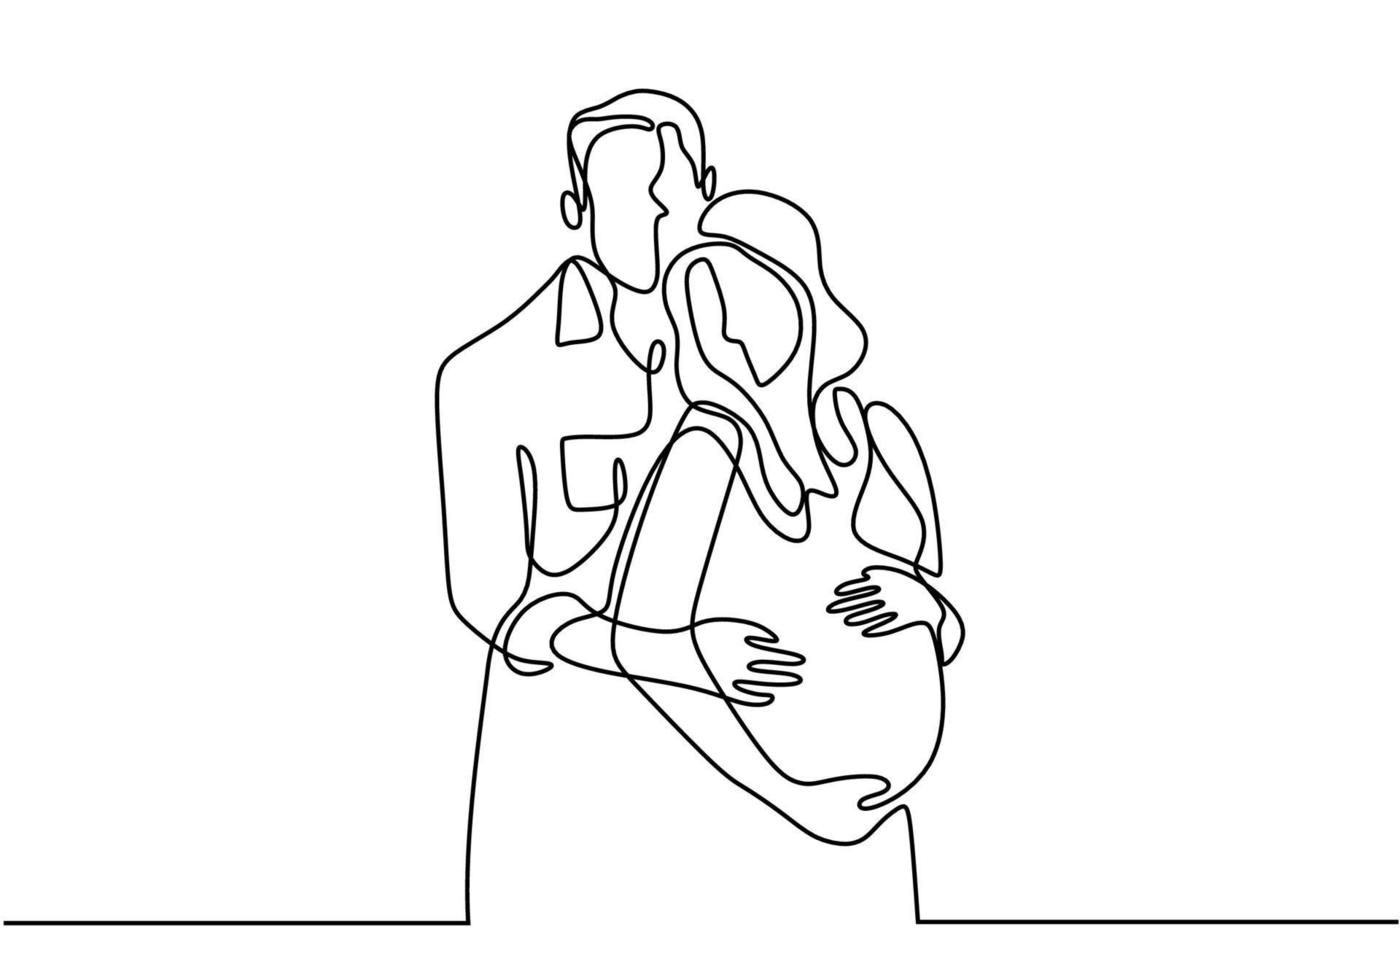 eine Strichzeichnung der glücklichen schwangeren Frau und des Ehemanns. paar familie vektor